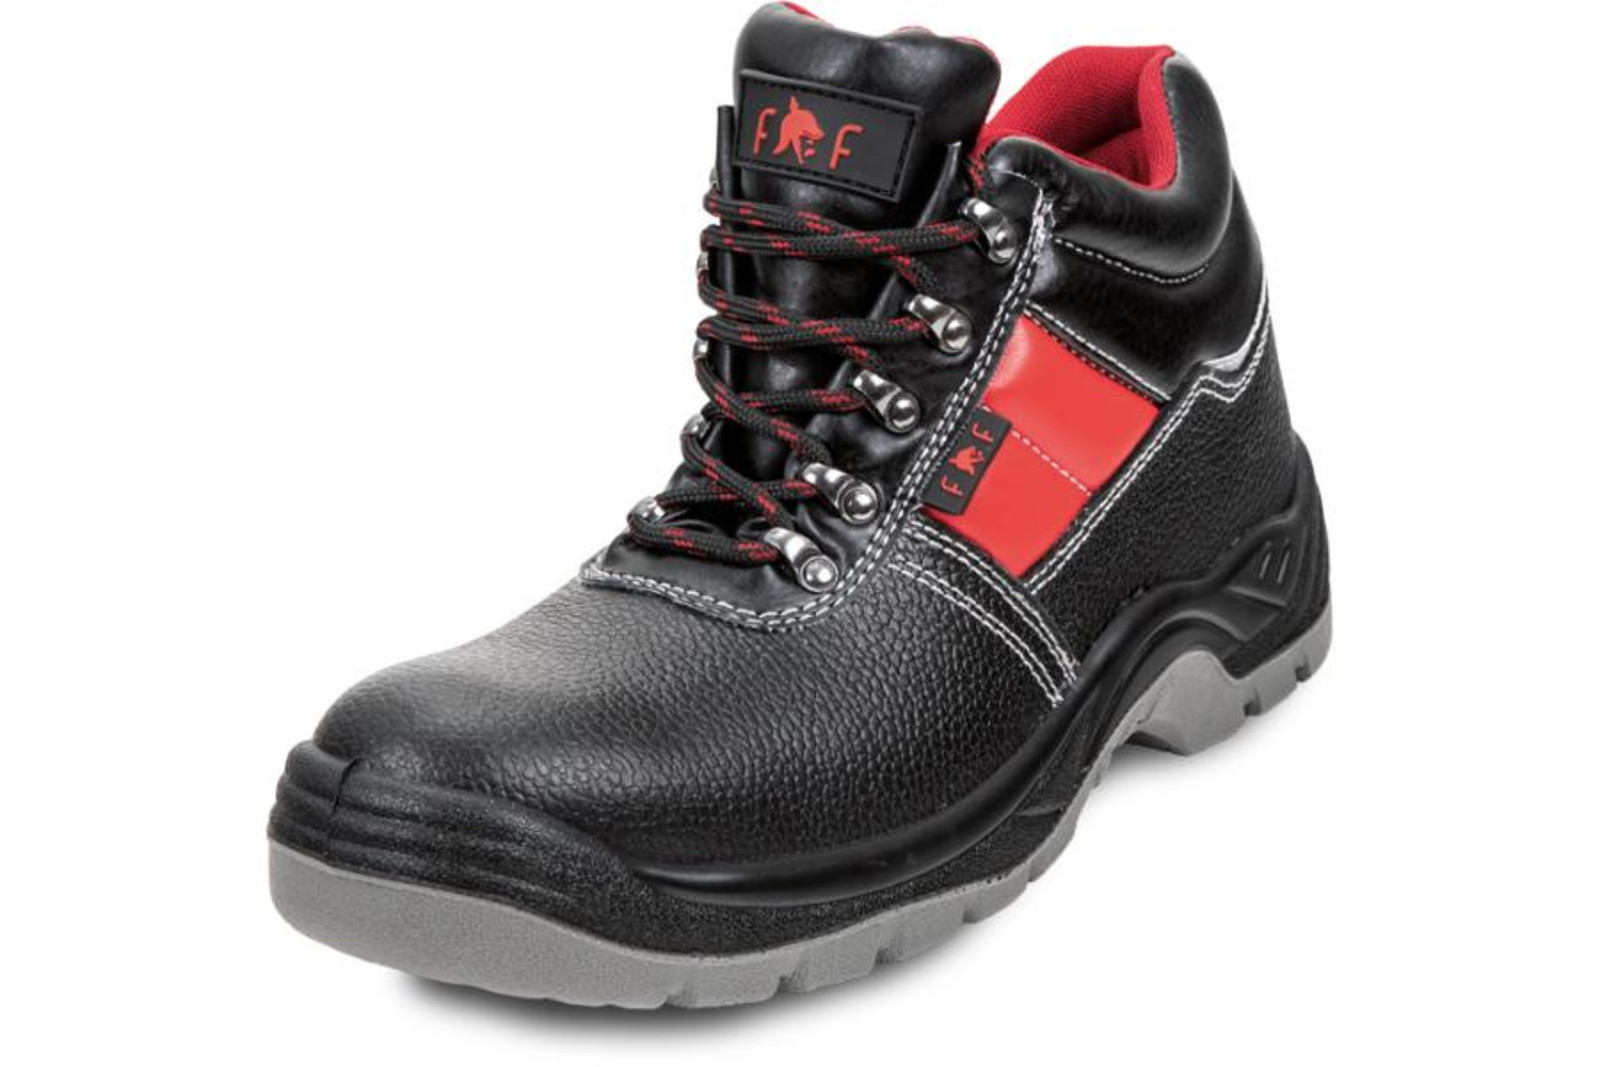 Bezpečnostná obuv SC 03-003 S3 - veľkosť: 41, farba: čierna